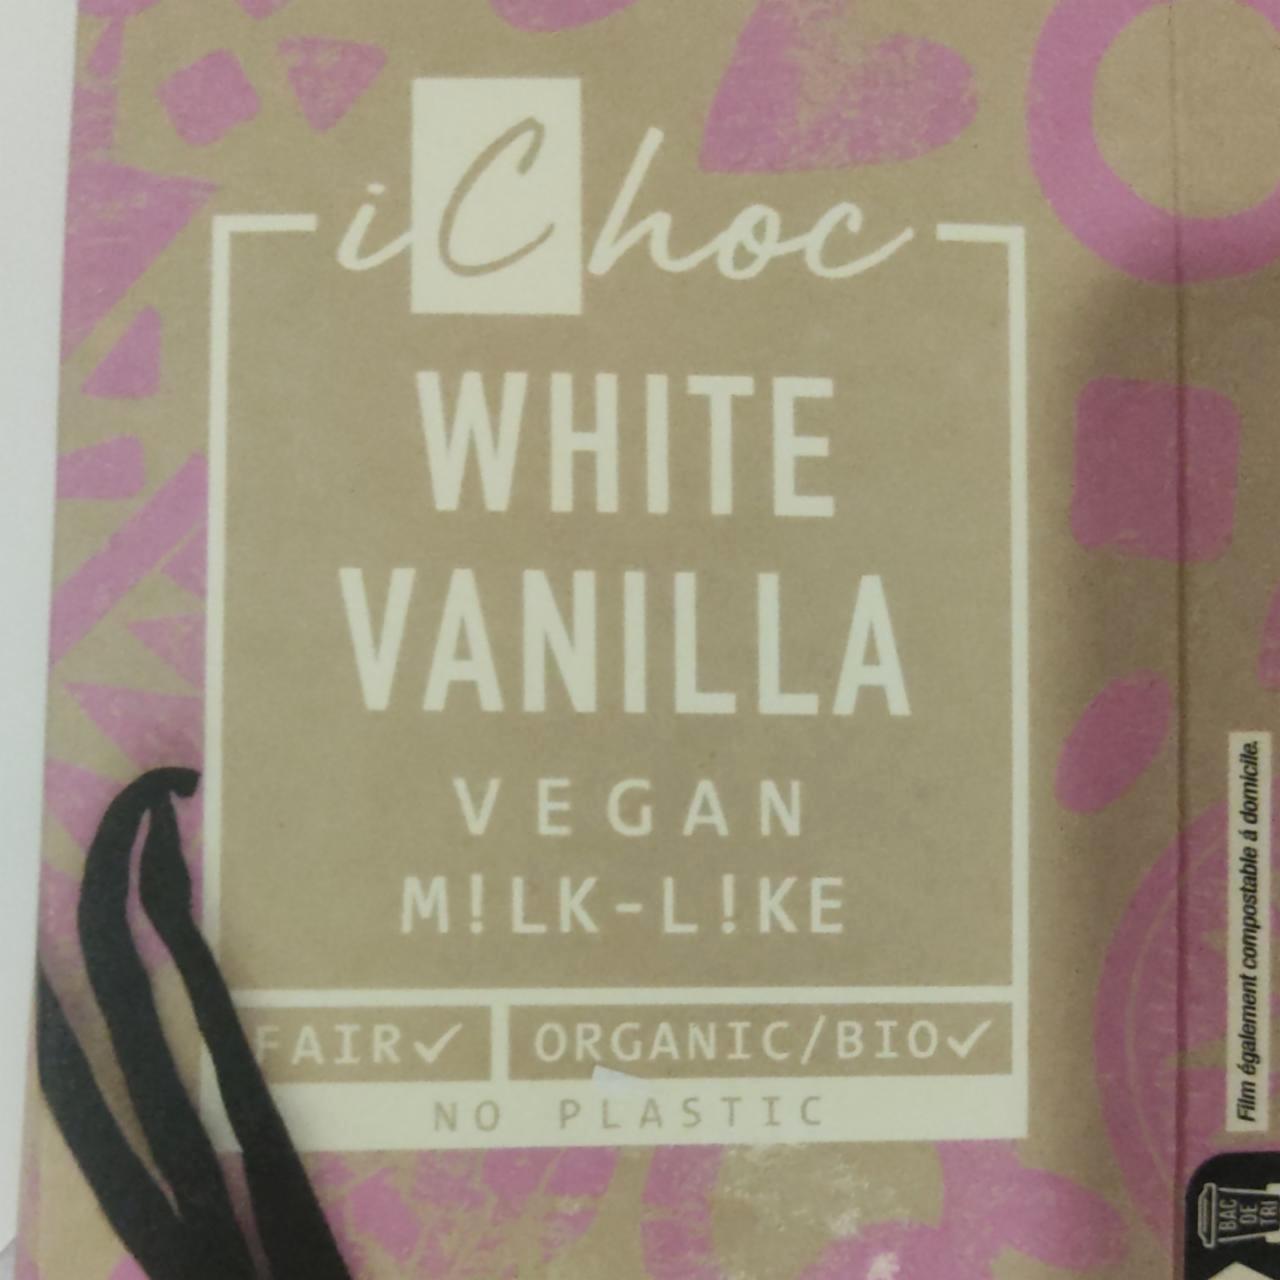 Képek - Fehér csokoládé vaníliás vegán iChoc